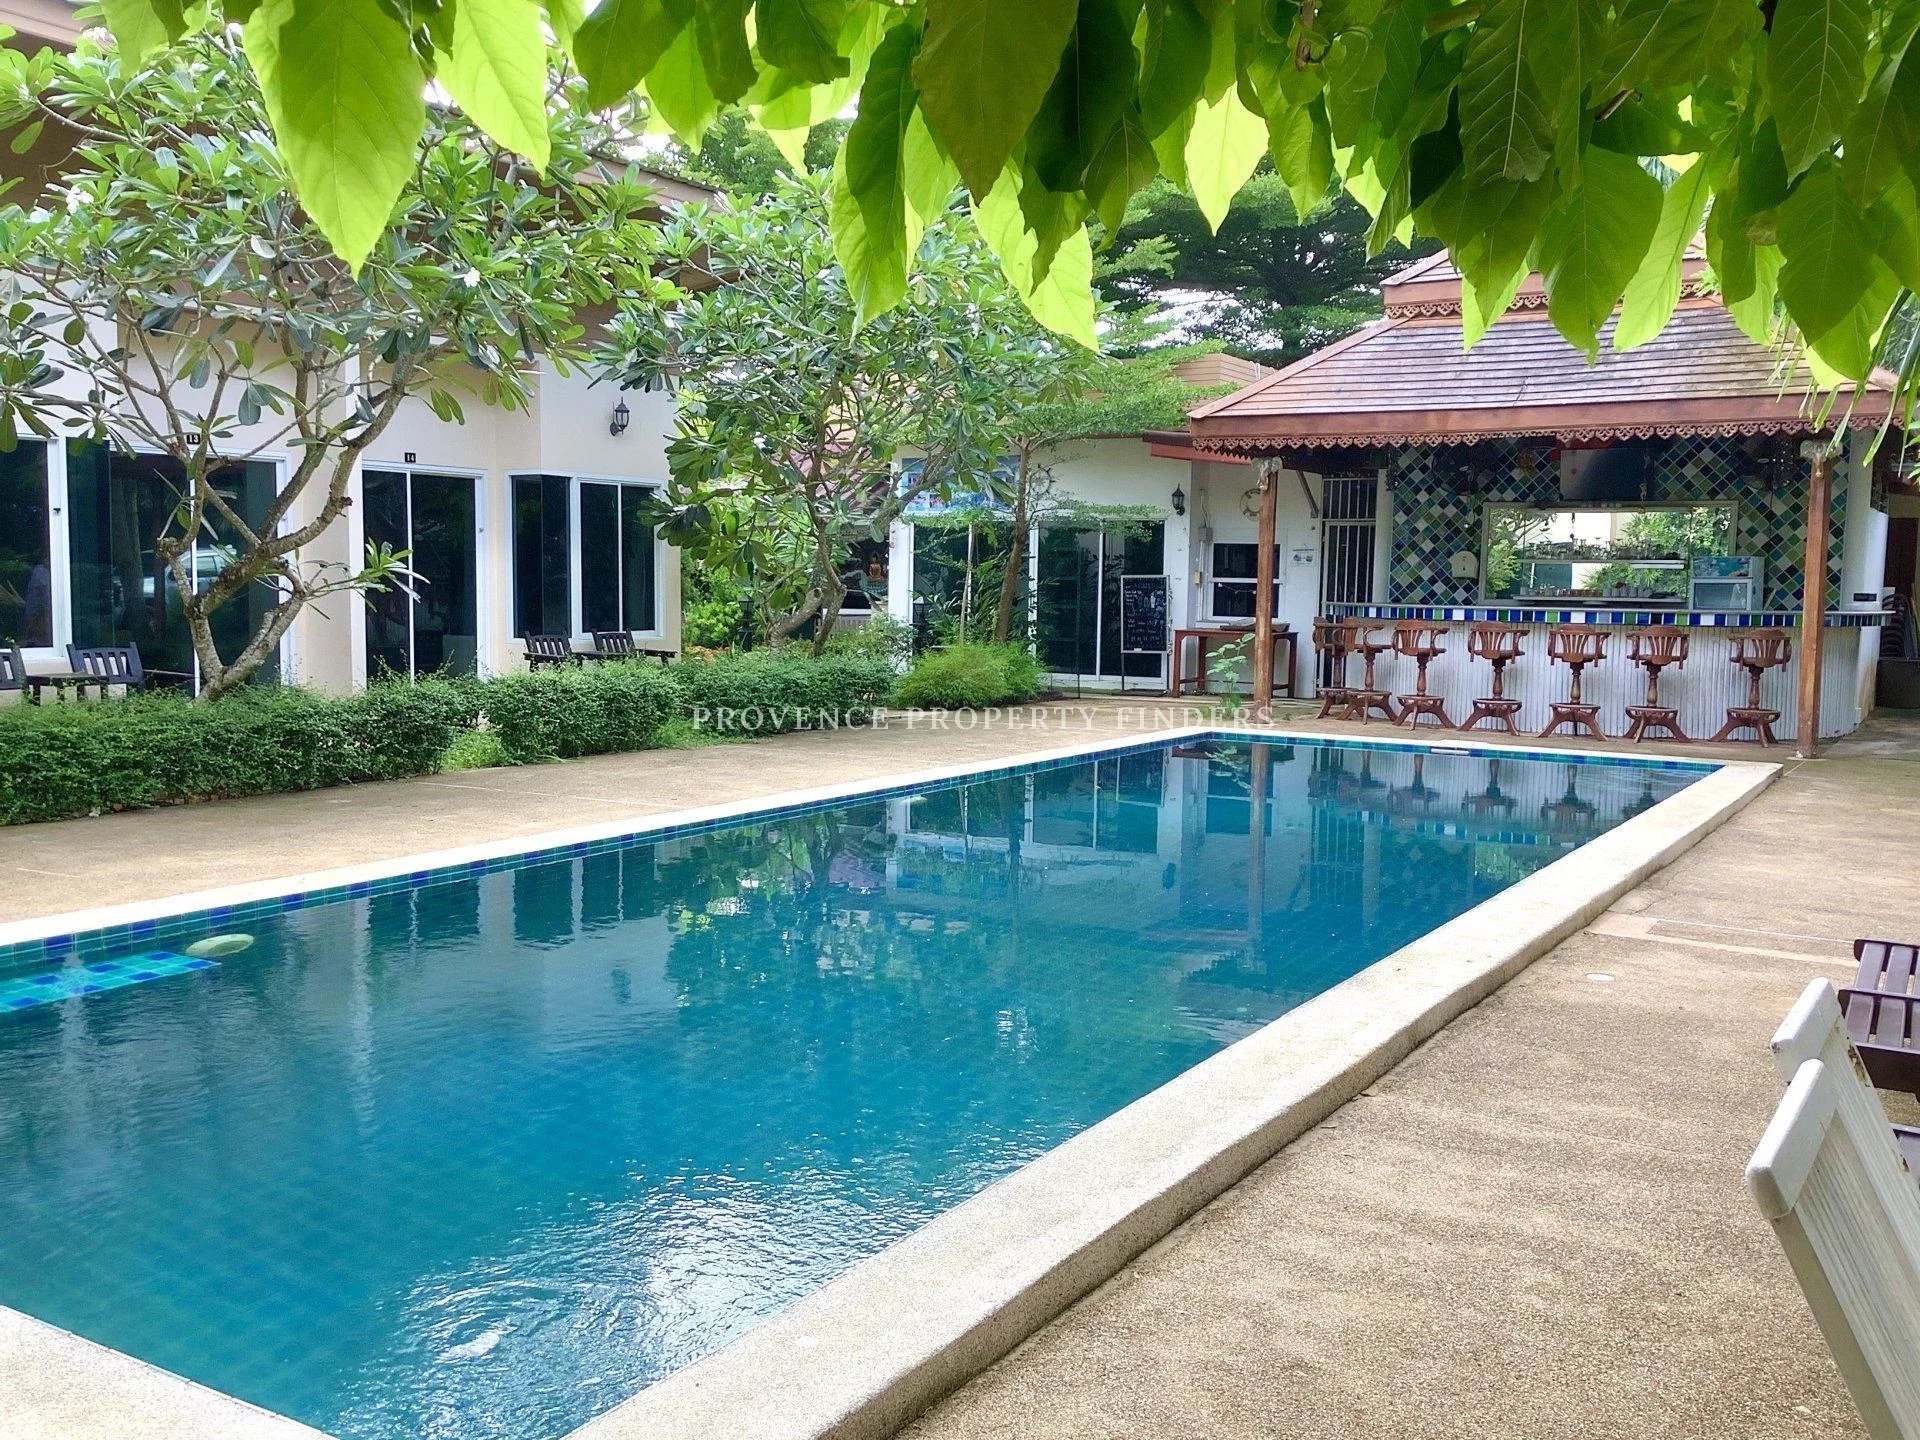 Votre rêve de gérer un resort en Thaïlande commence ici